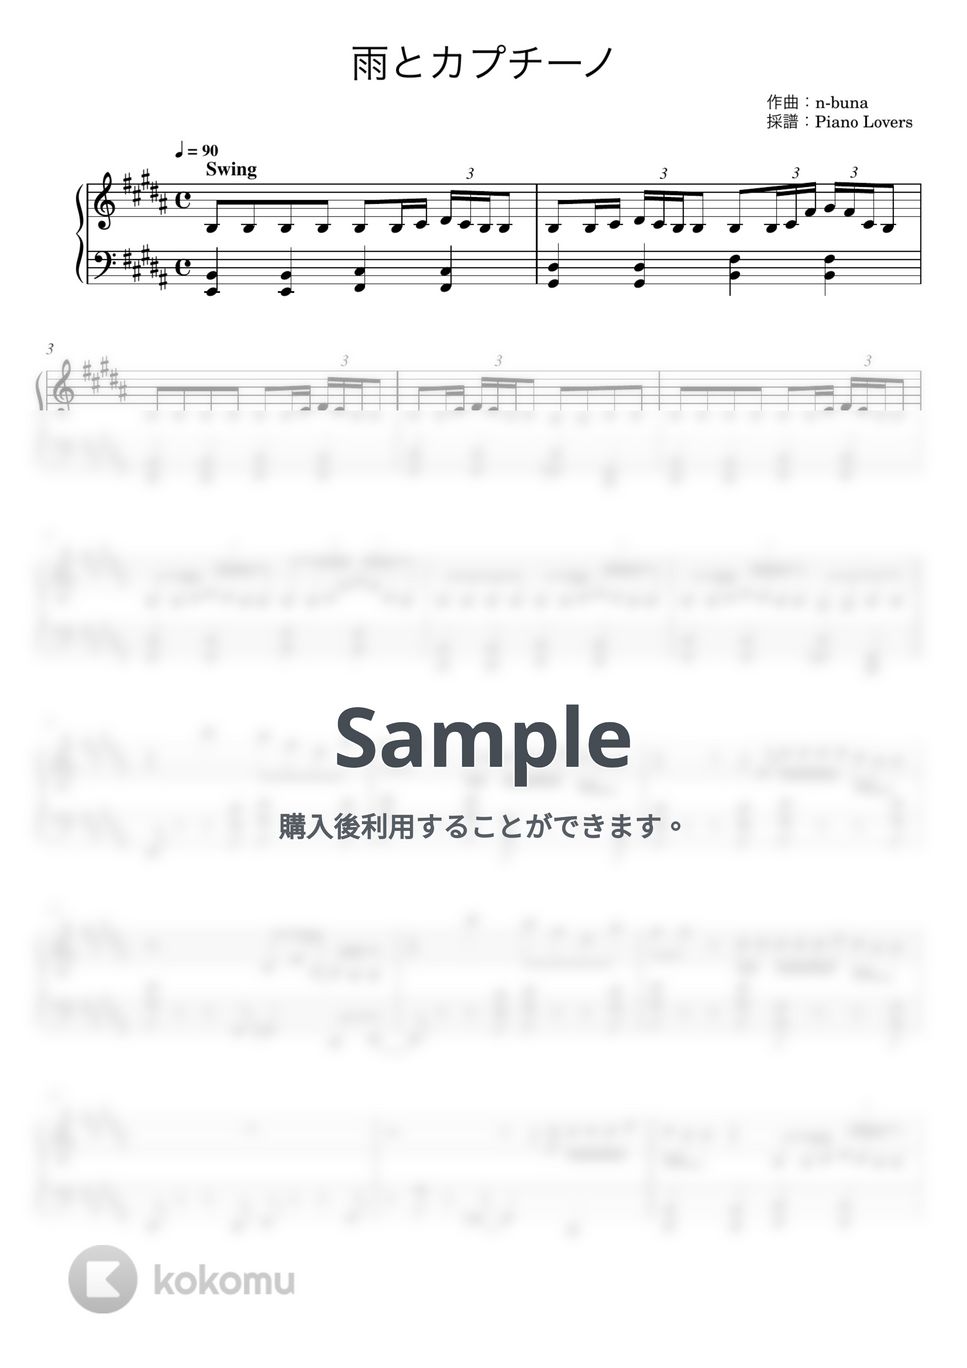 ヨルシカ - 雨とカプチーノ (ピアノ楽譜 / 初級) by Piano Lovers.jp